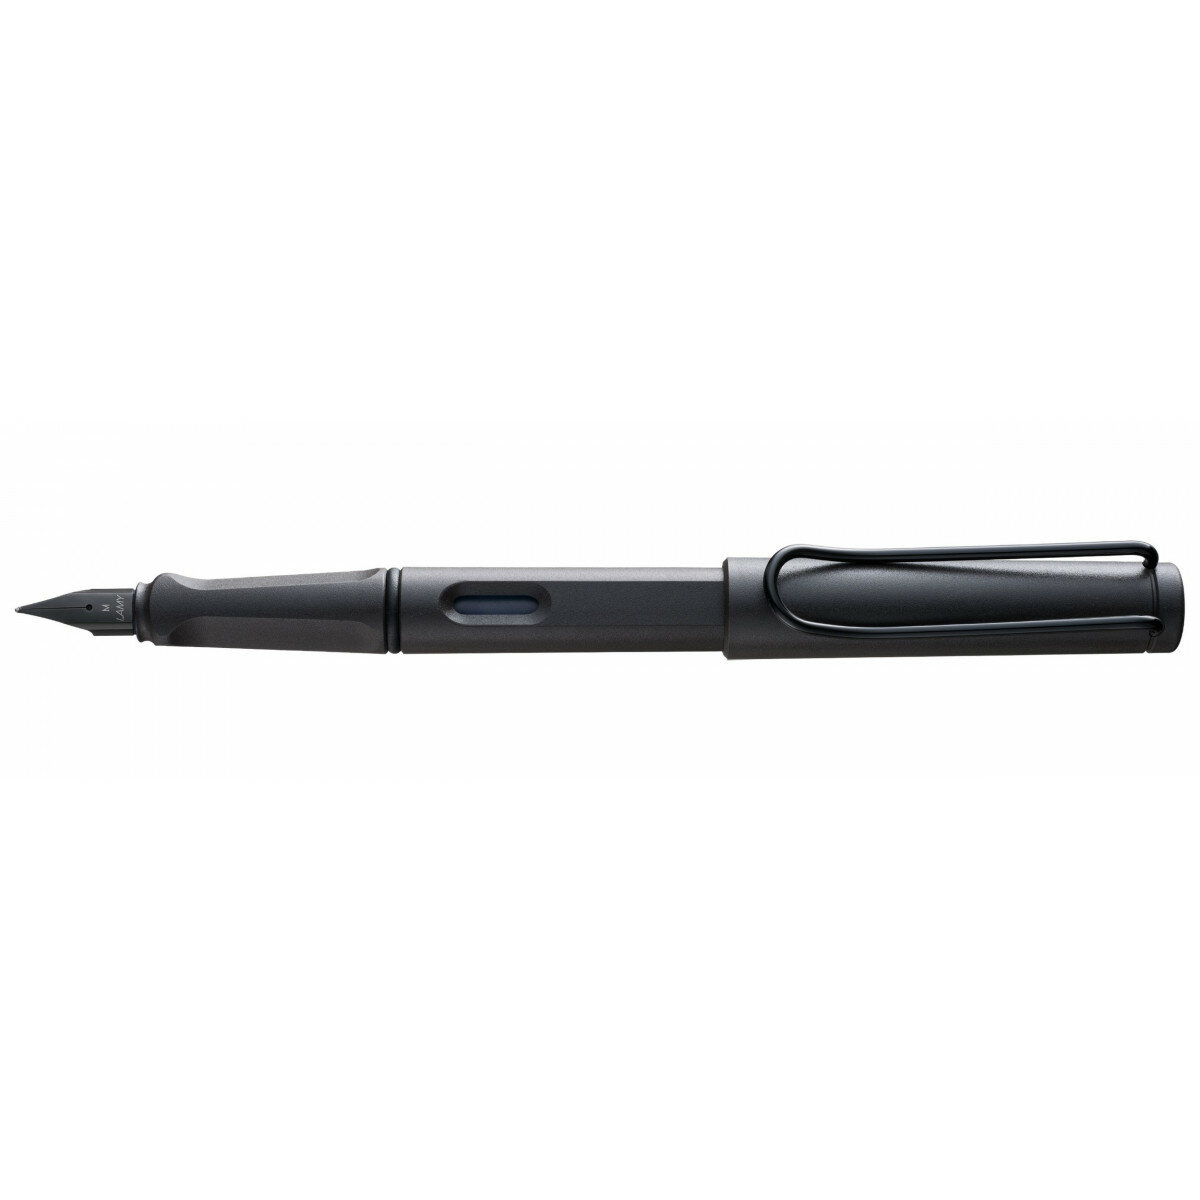 Перьевая ручка Lamy Safari Charcoal Black перо M (4000196)